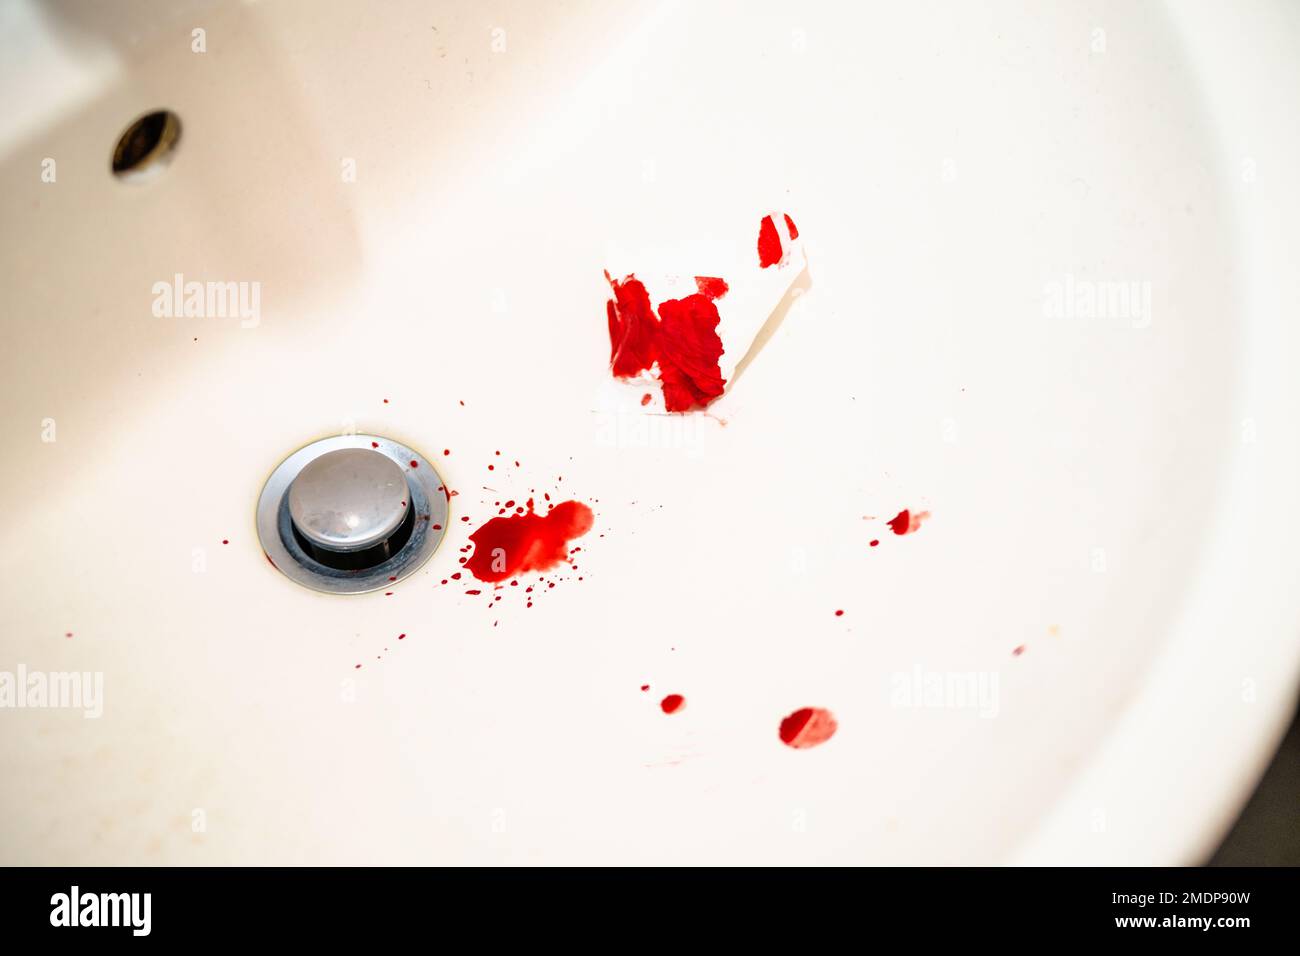 Rote Bluttropfen im weißen Waschbecken im Badezimmer. Echtes Blut als Spuren und Beweis eines Verbrechens. Begriff Nasenbluten, Verletzung, Gewalt, Mord oder Selbstmord. Blut Stockfoto